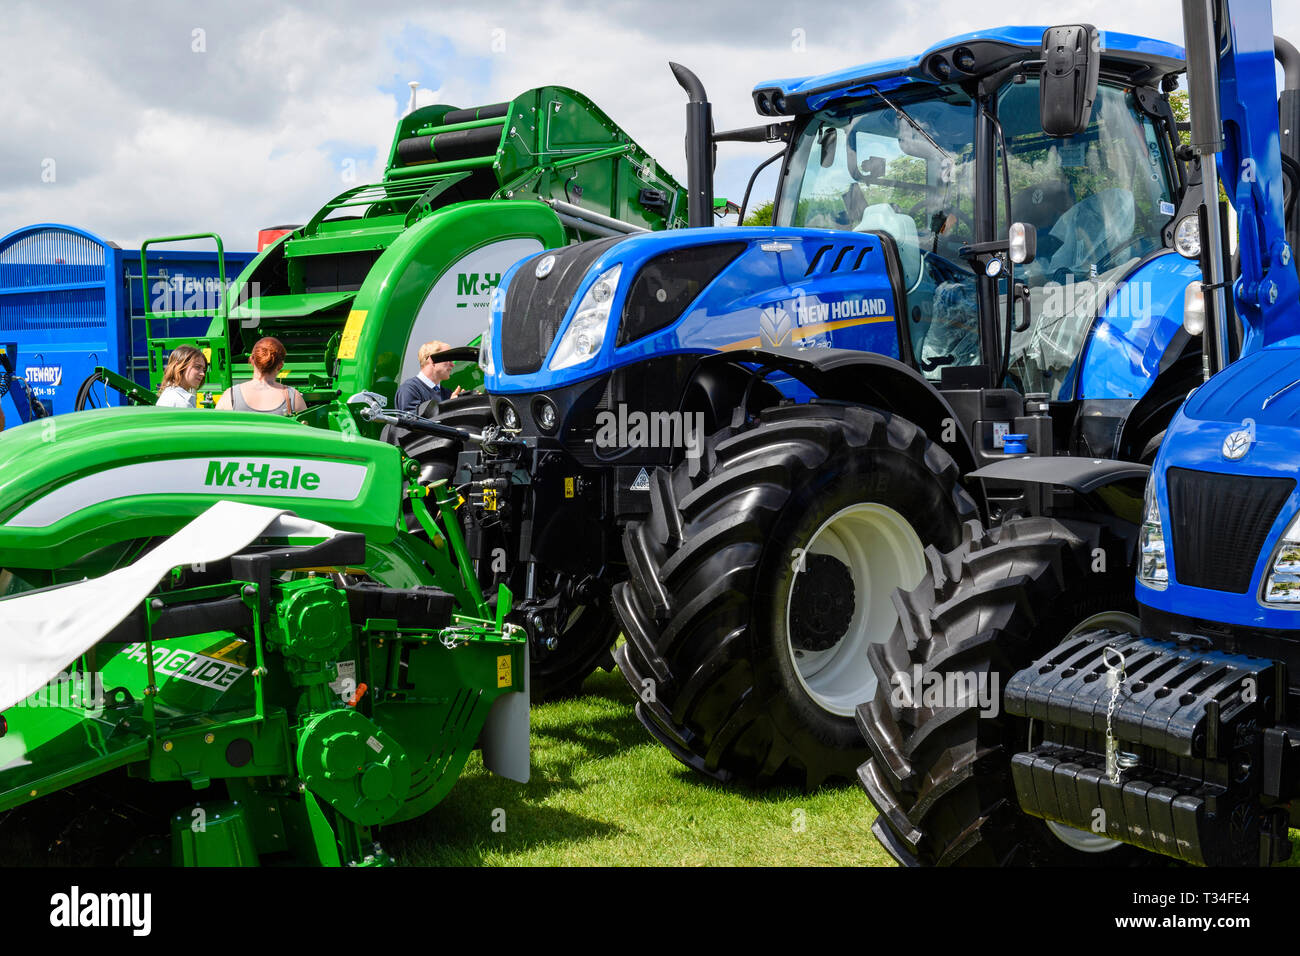 Visualizzazione delle macchine agricole (trattori New Holland, McHale imballatrice & falciatrice) parcheggiato a fianco a fianco sul commercio stand - Grande spettacolo dello Yorkshire, Inghilterra, Regno Unito. Foto Stock